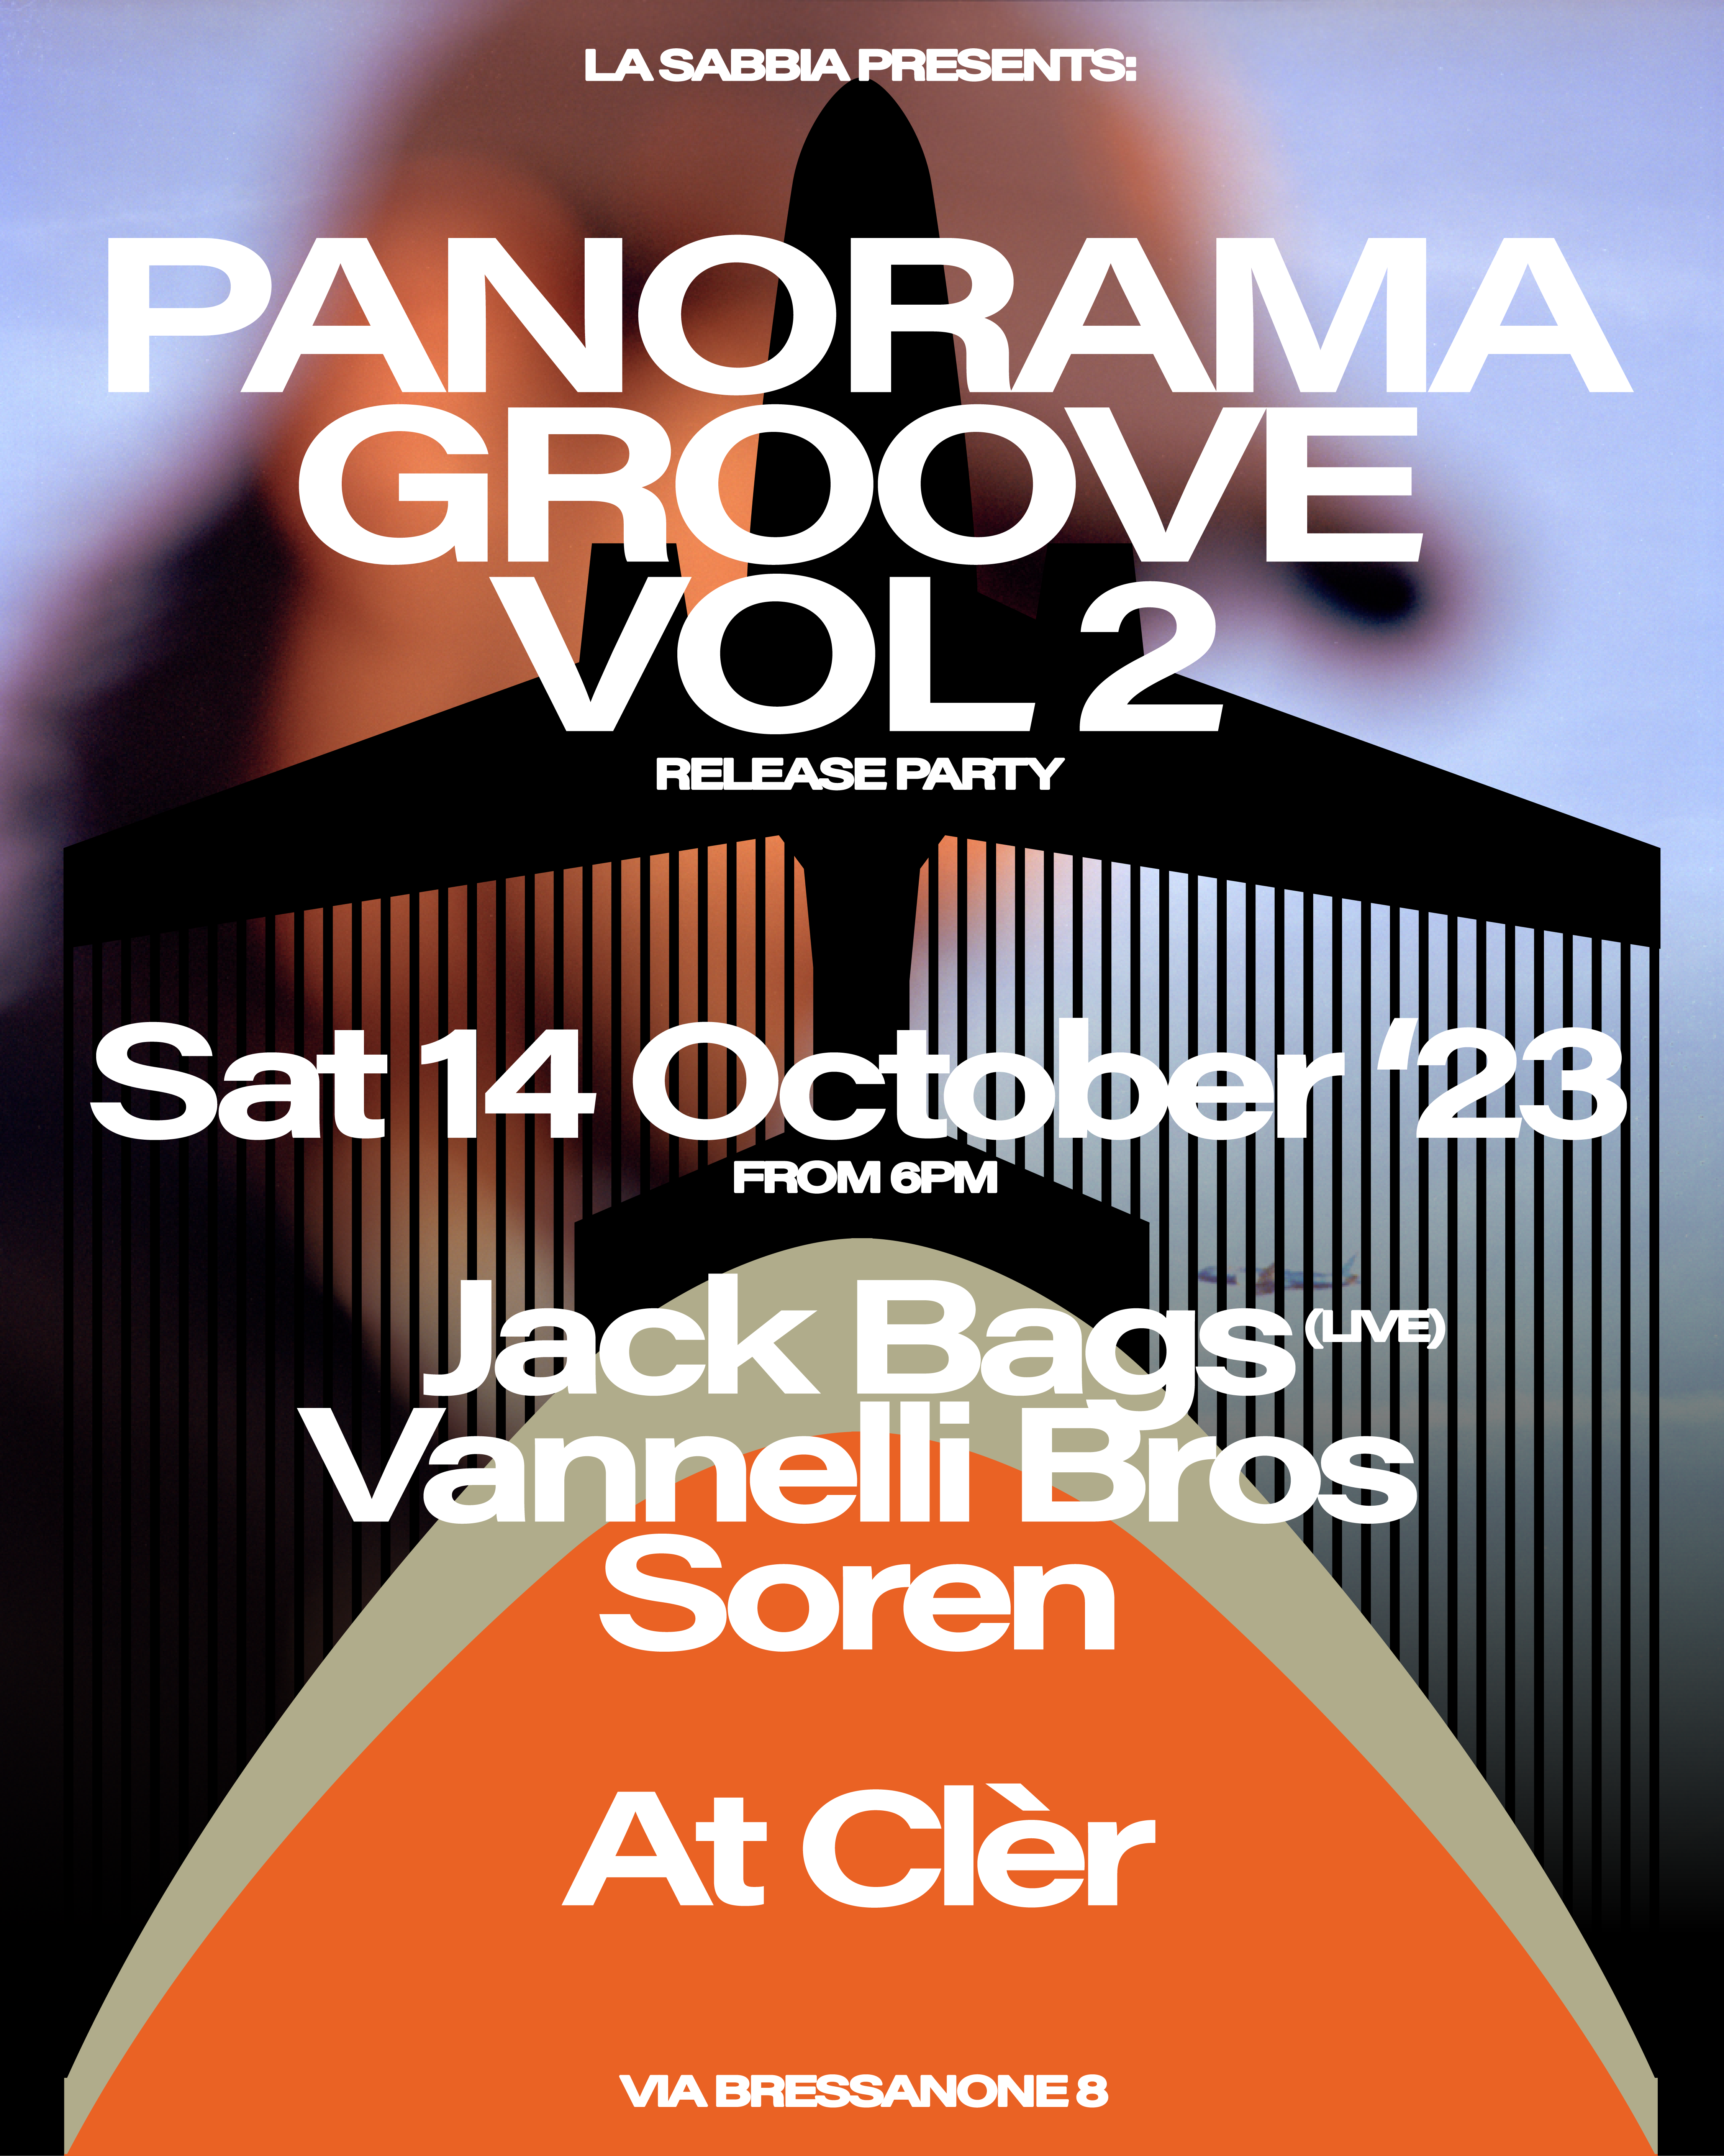 La Sabbia pres. Panorama Groove Vol.2 Release Party - Página frontal